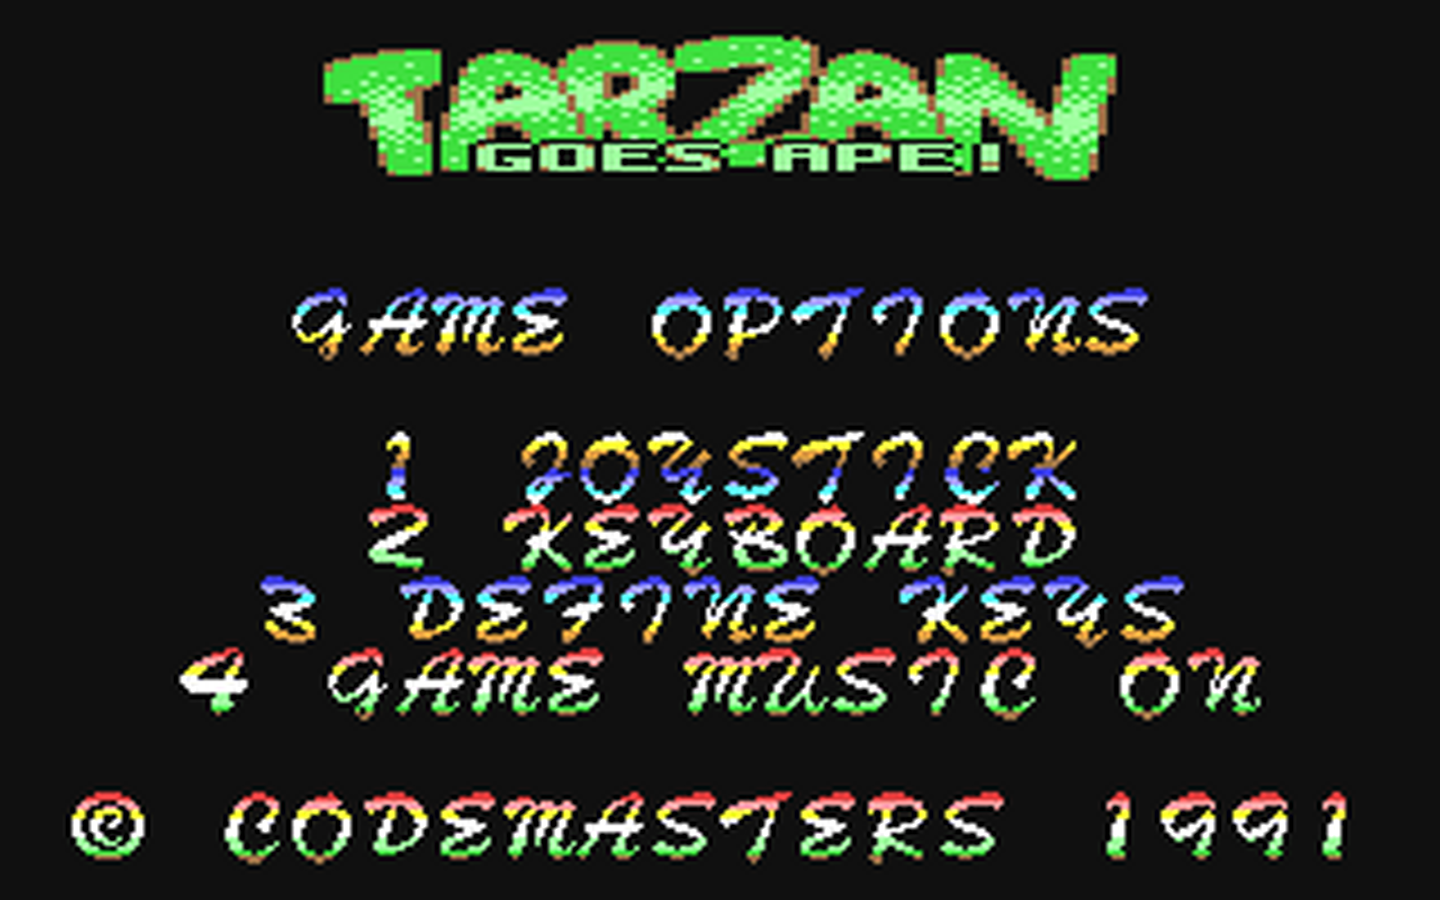 C64 GameBase Tarzan_Goes_Ape! Codemasters 1991